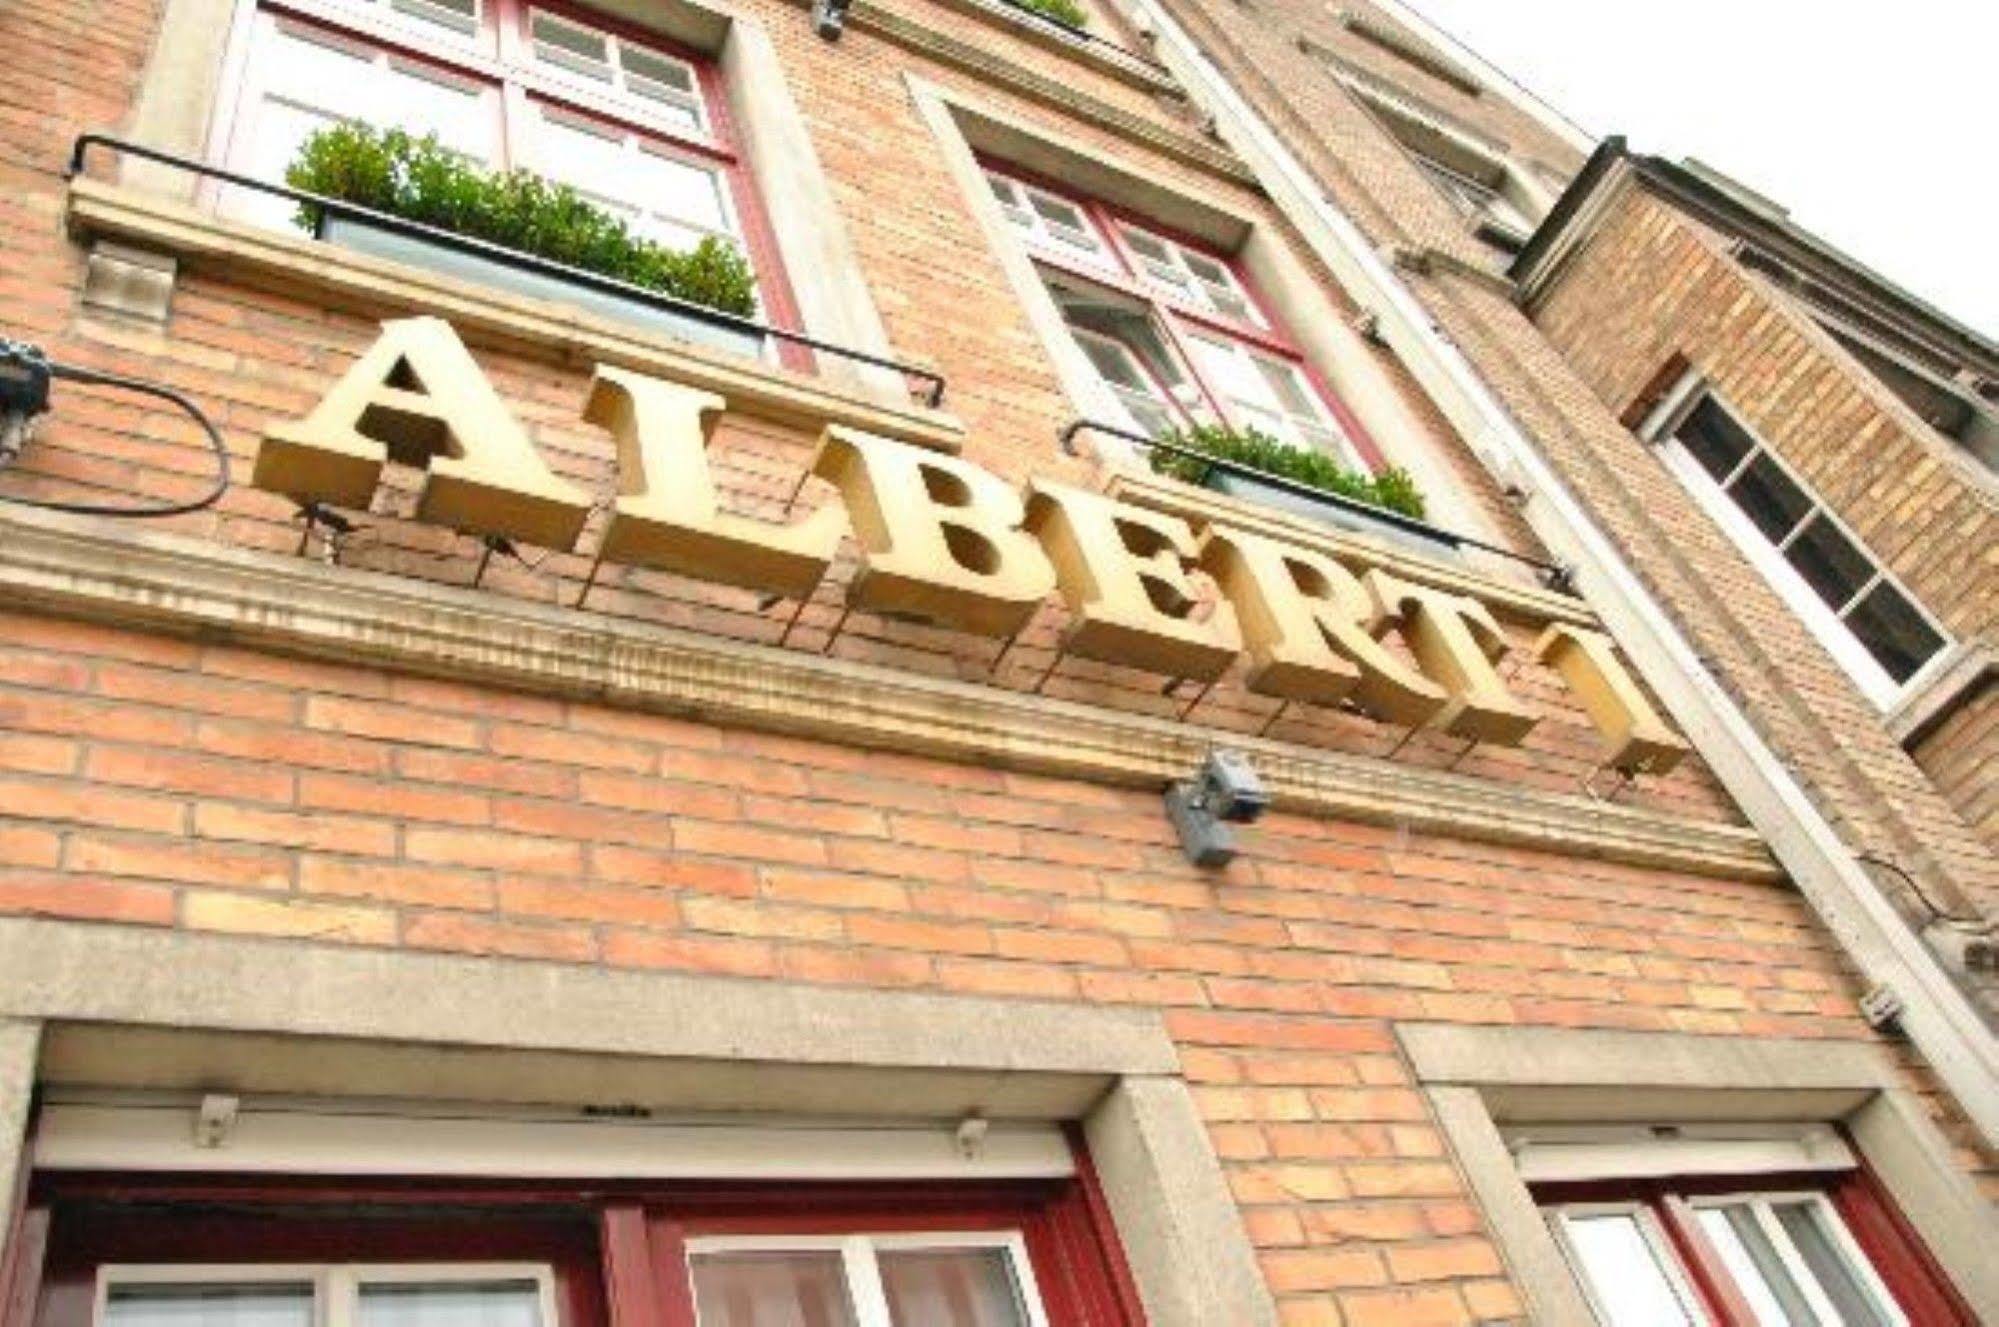 Hotel Albert I Bruges Exterior foto